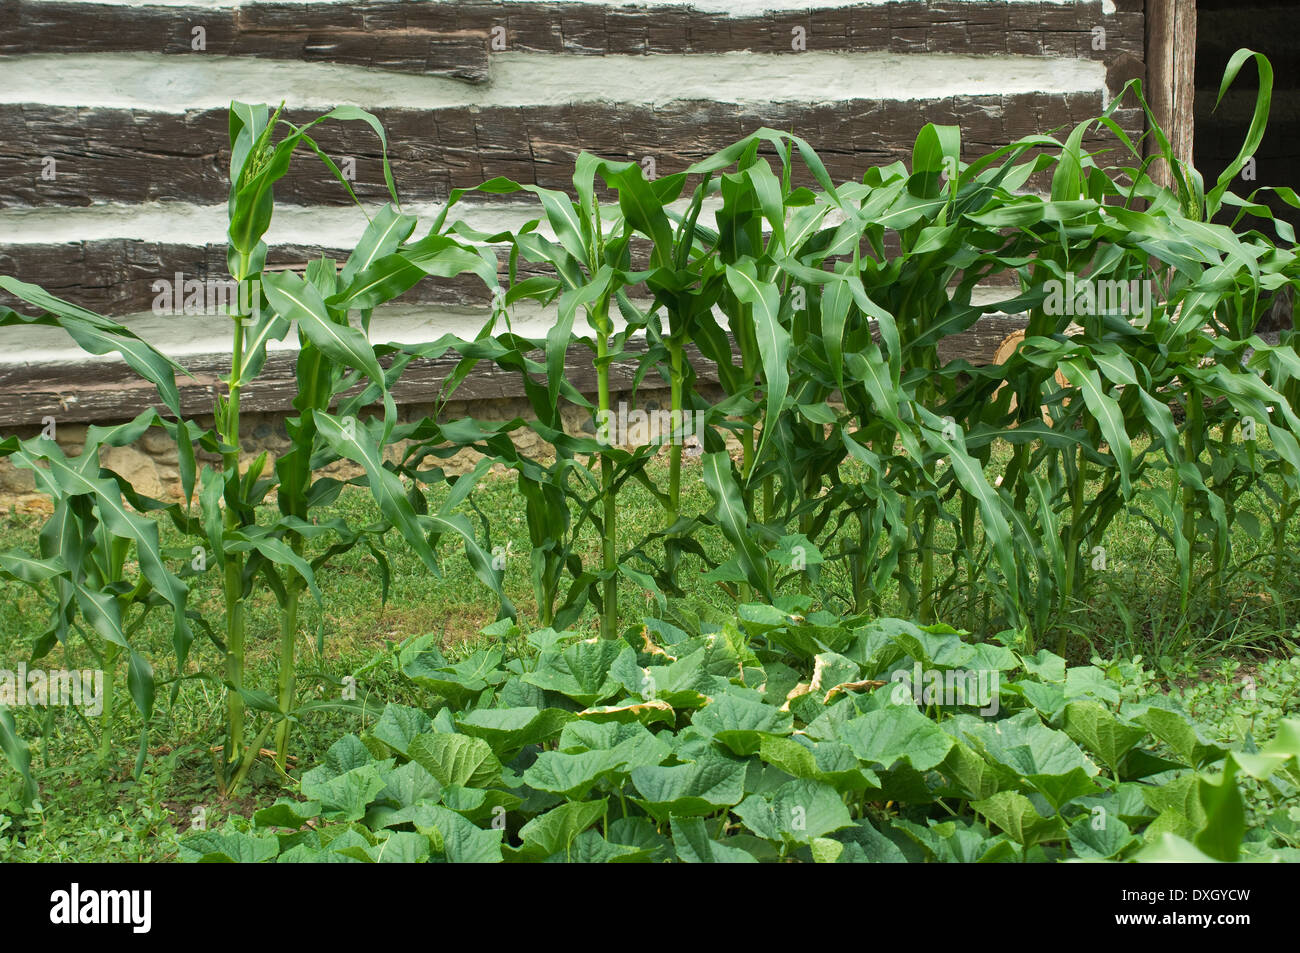 Le maïs et le squash au potager du vieux Fort Wayne, Ft Wayne, Indiana. Photographie numérique Banque D'Images